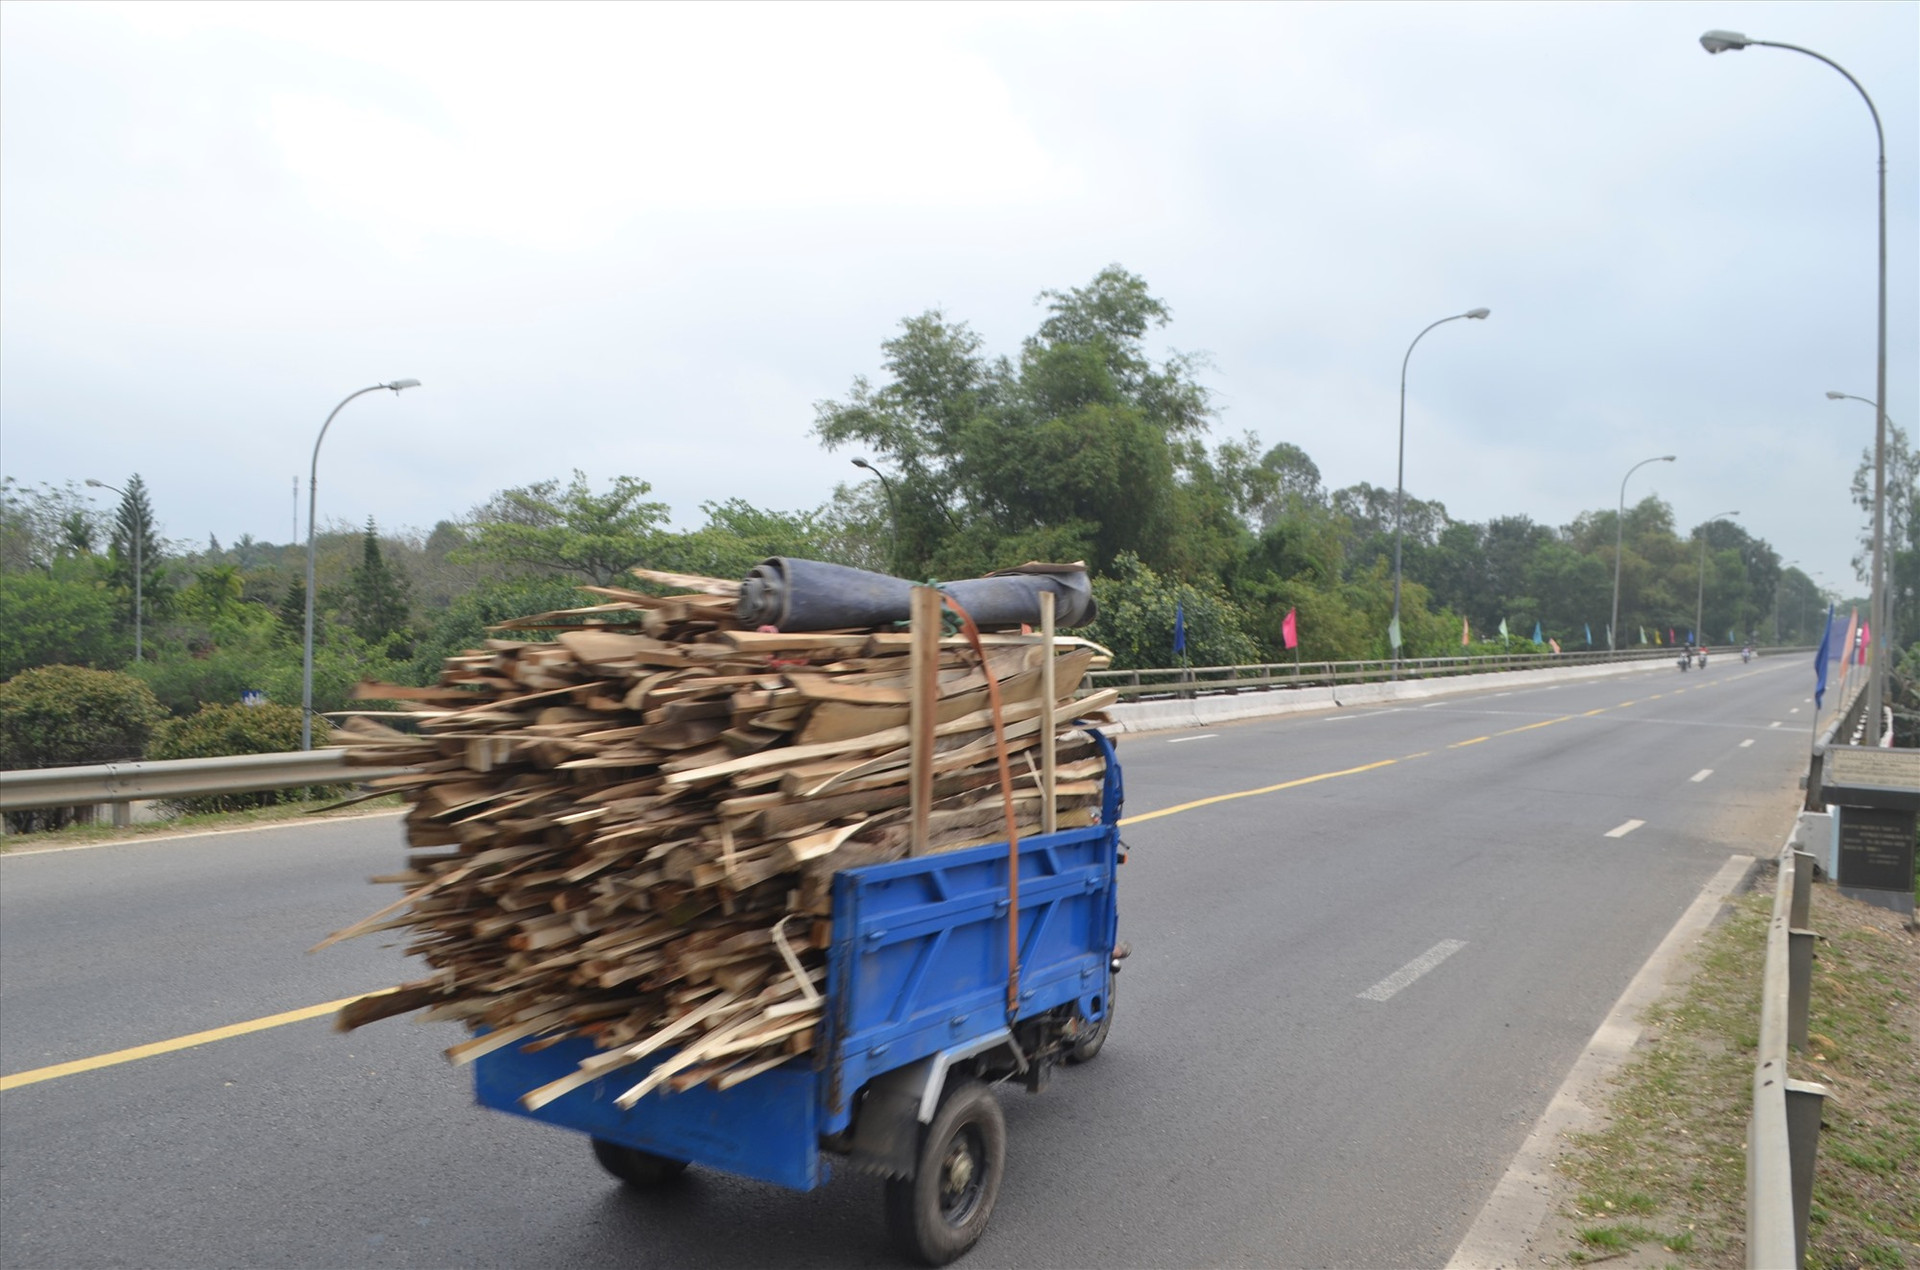 Xe 3 bánh (xe lôi) chở quá kích thước thành thùng lưu thông trên đường Nguyễn Hoàng (TP.Tam Kỳ). Ảnh: K.K